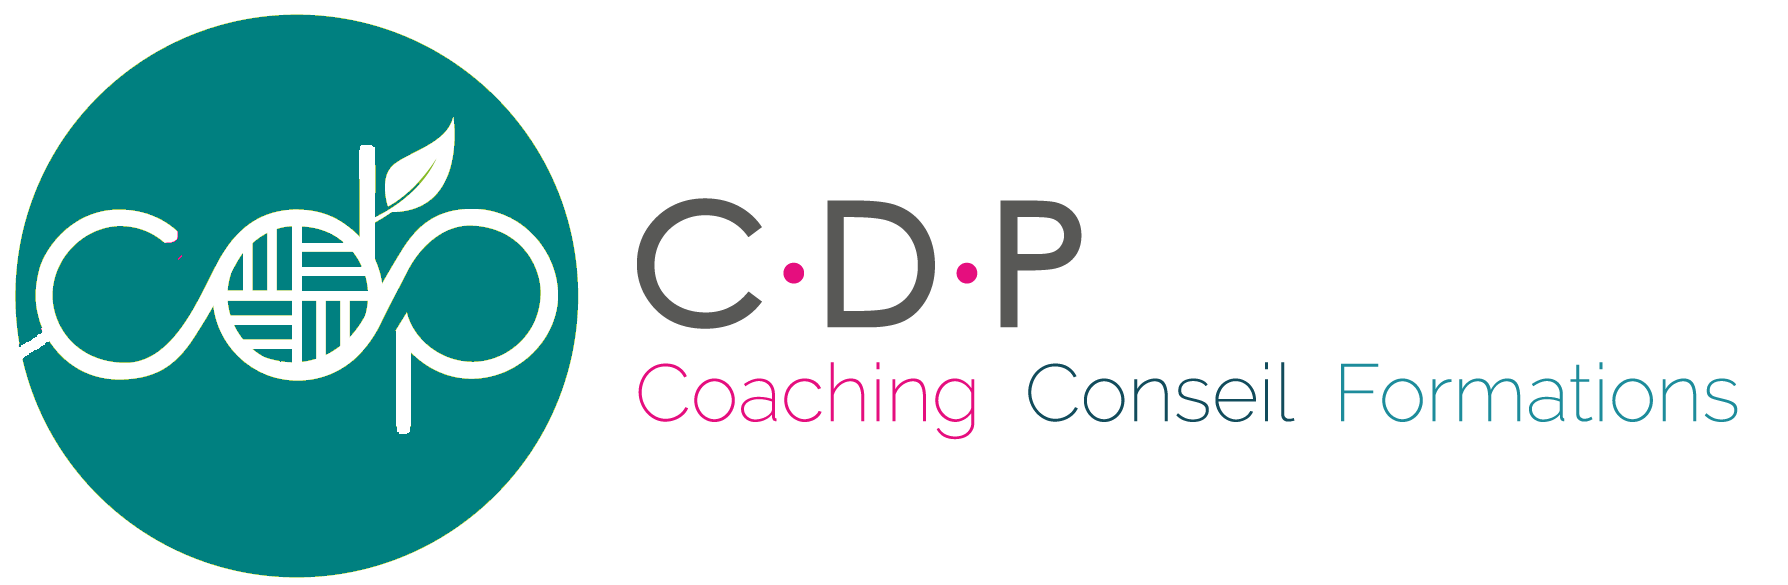 Bilan de compétences - cdp-conseil - Coaching et formations